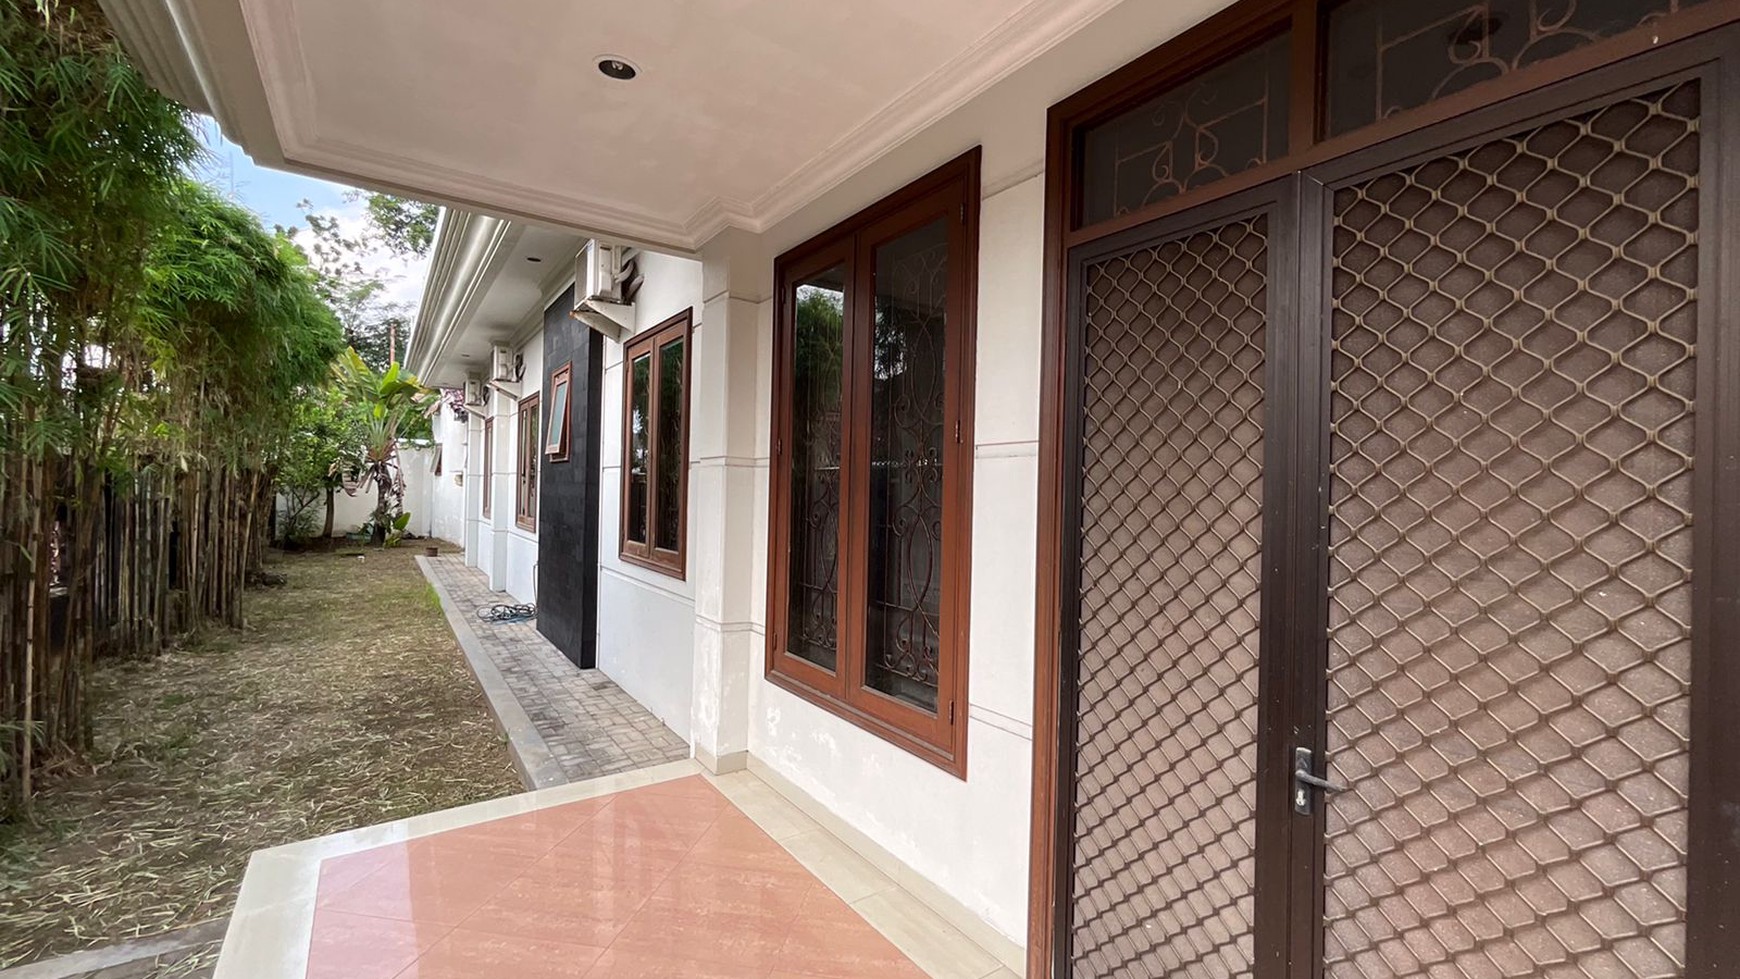 Dijual Rumah Mewah Klasik Dalam Perum Elite Pandega Marta Depok Sleman 